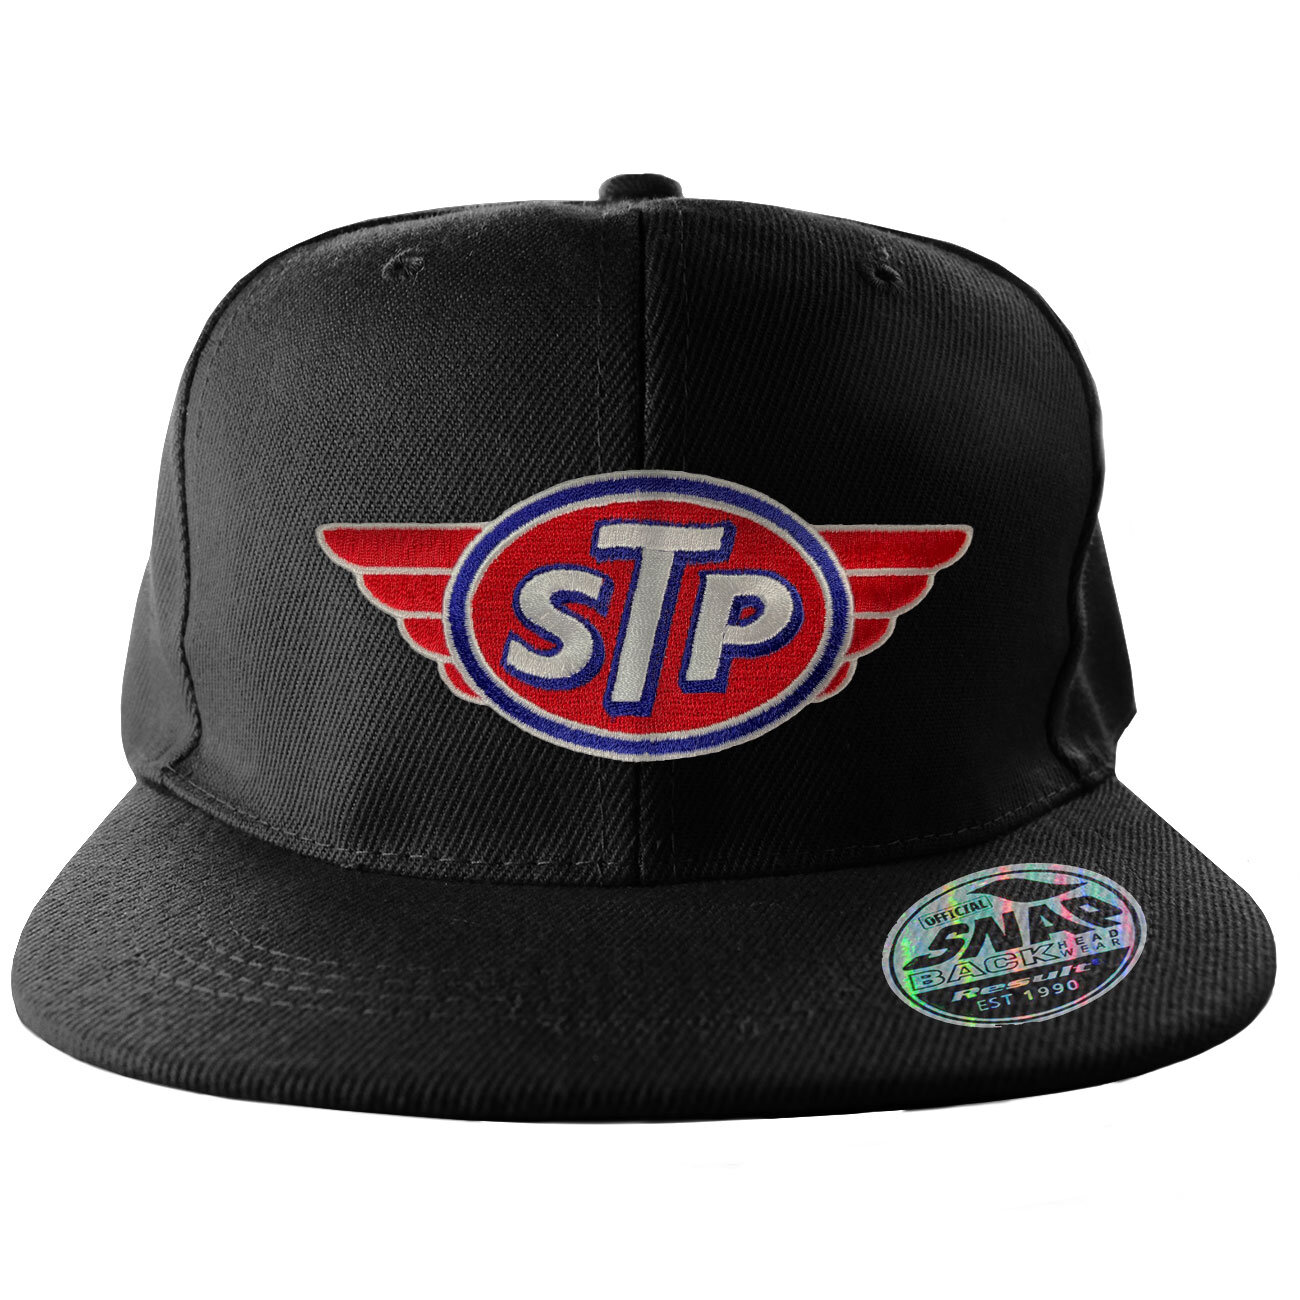 STP Patch Standard Snapback Cap